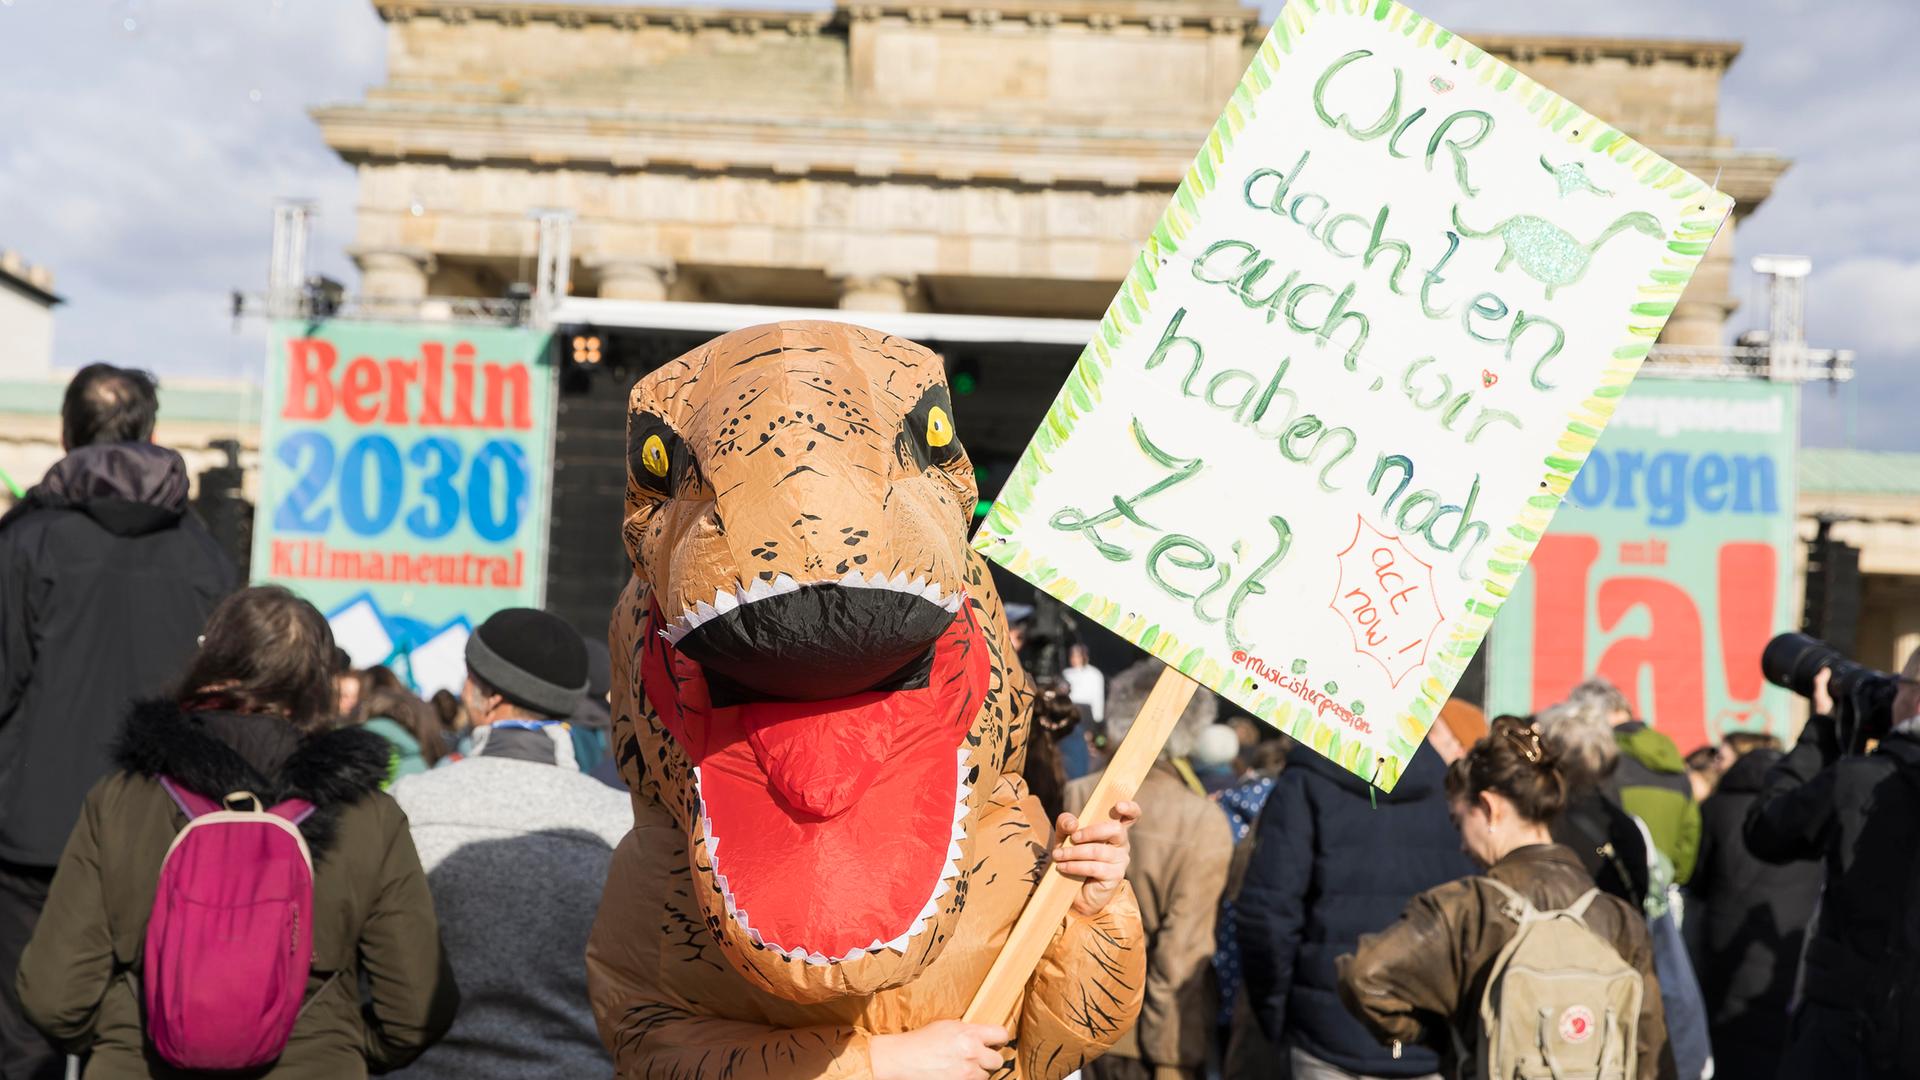 Teilnehmerin im Dinosaurier-Kostüm mit Schild "Wir dachten auch, wir haben noch Zeit" bei der Berlin Climate Aid Demo am Brandenburger Tor.